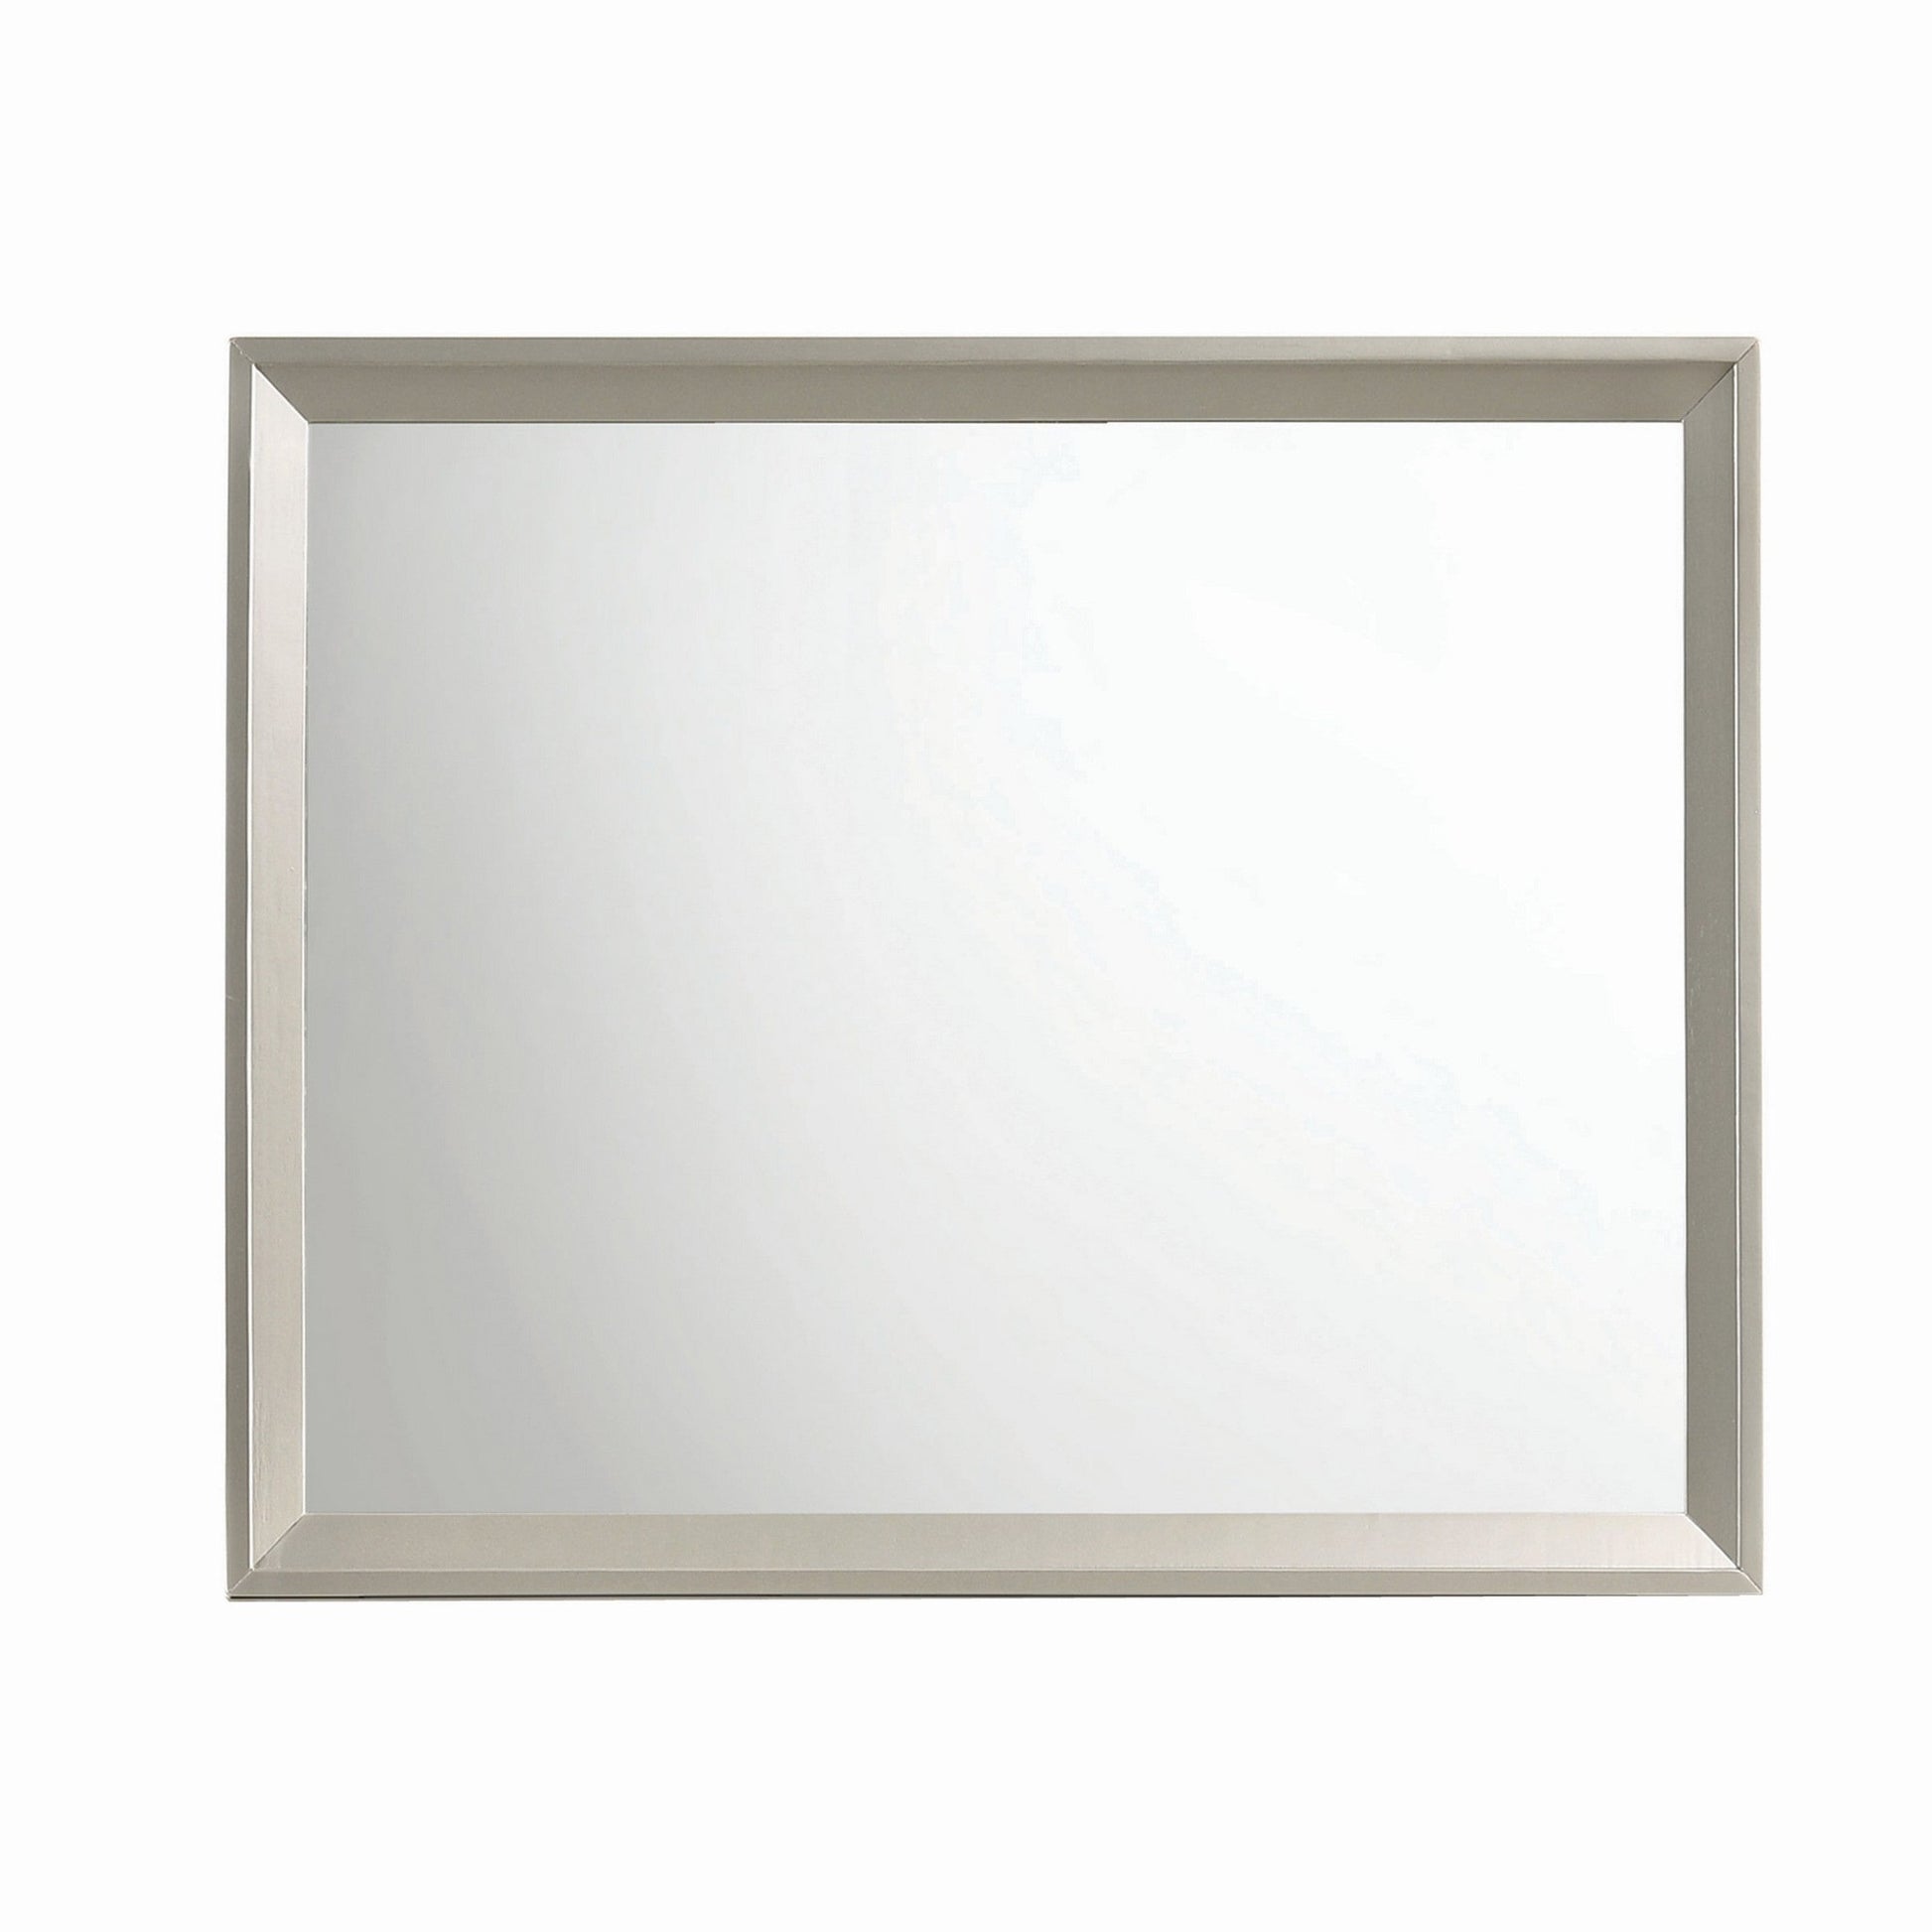 Benzara 46" Gray Transitional Wooden Framed Wall Mirror